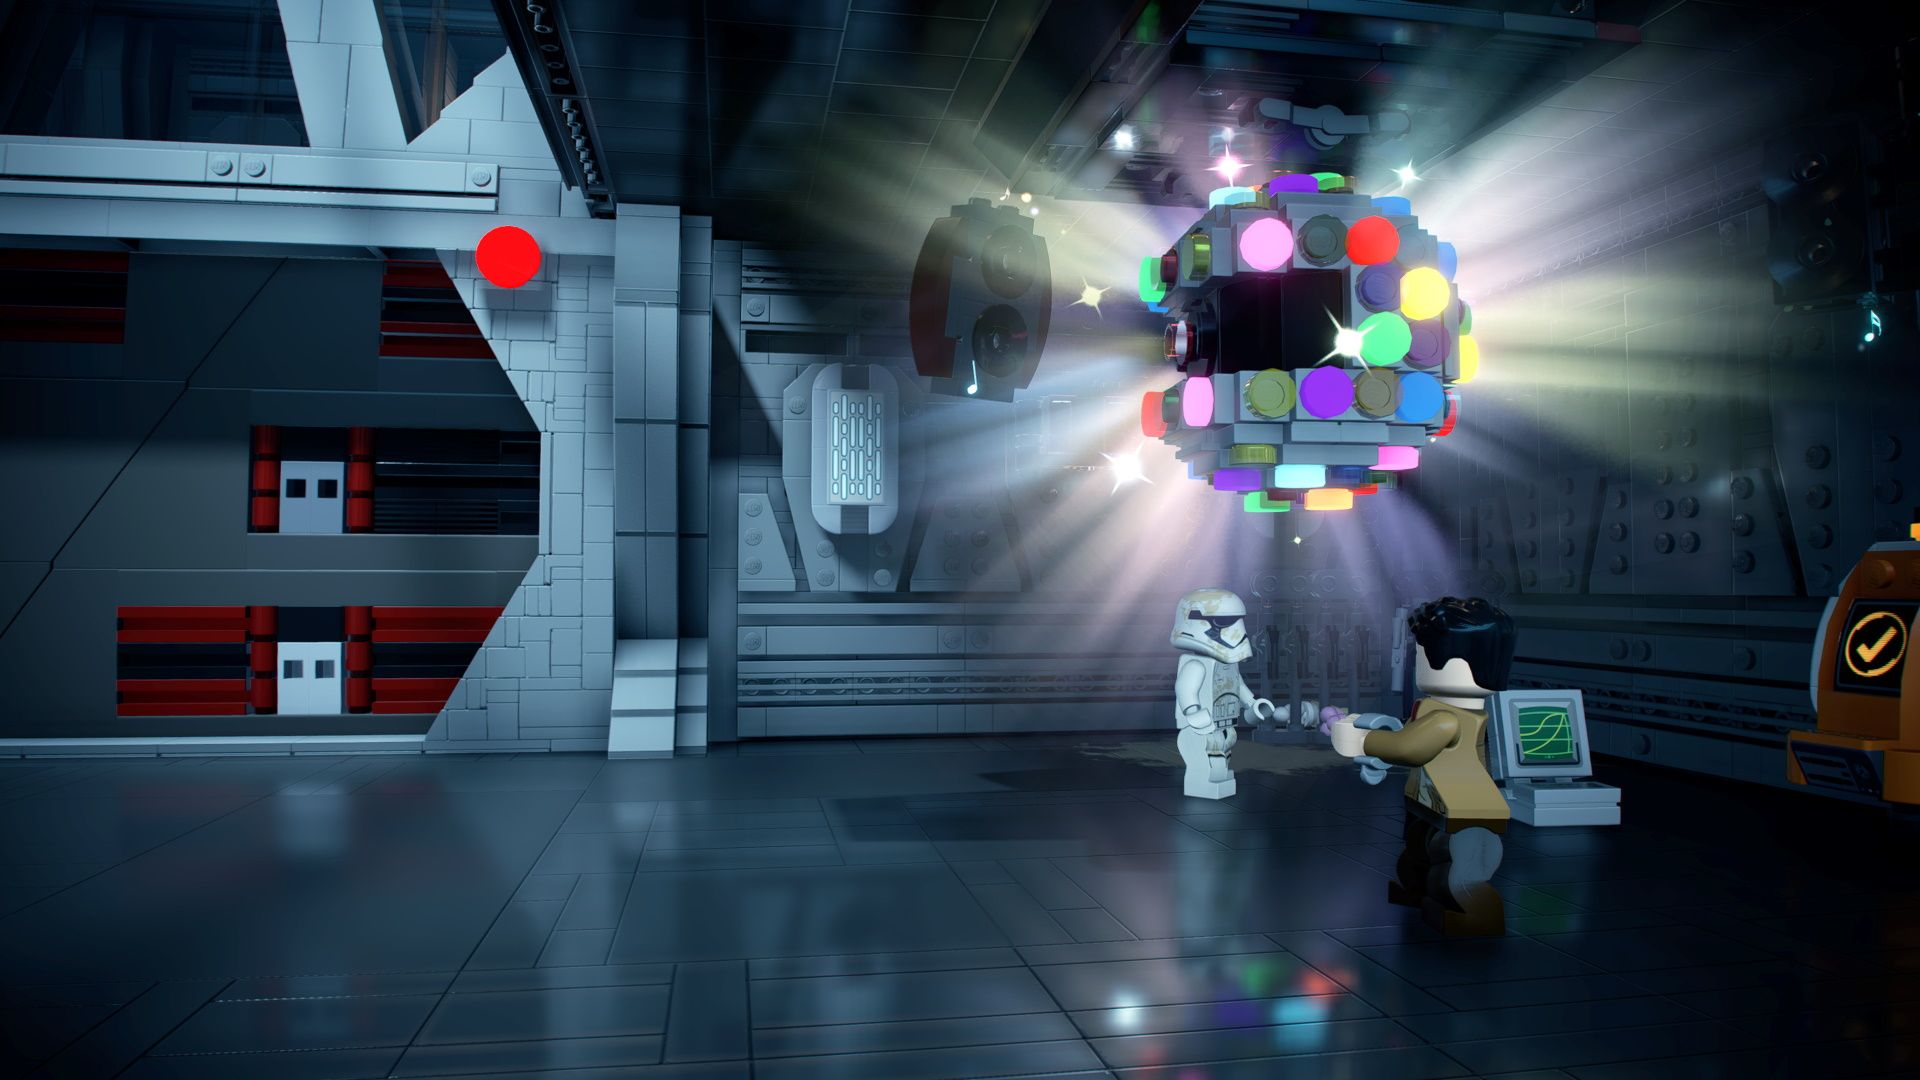 Stormtroopers disco dancing. 